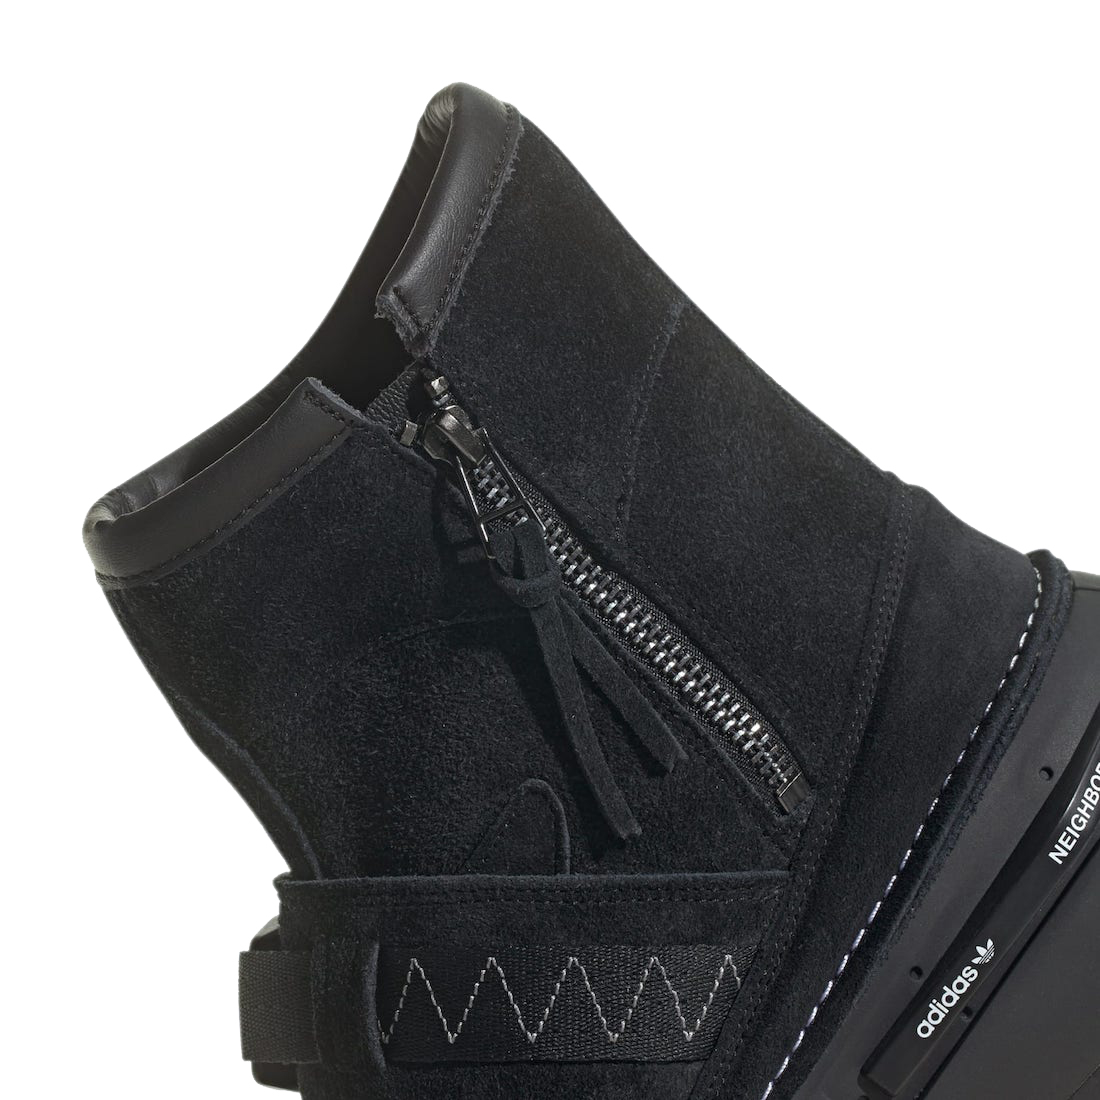 BUY Neighborhood X Adidas NMD S1 Boots Core Black | Kixify Marketplace